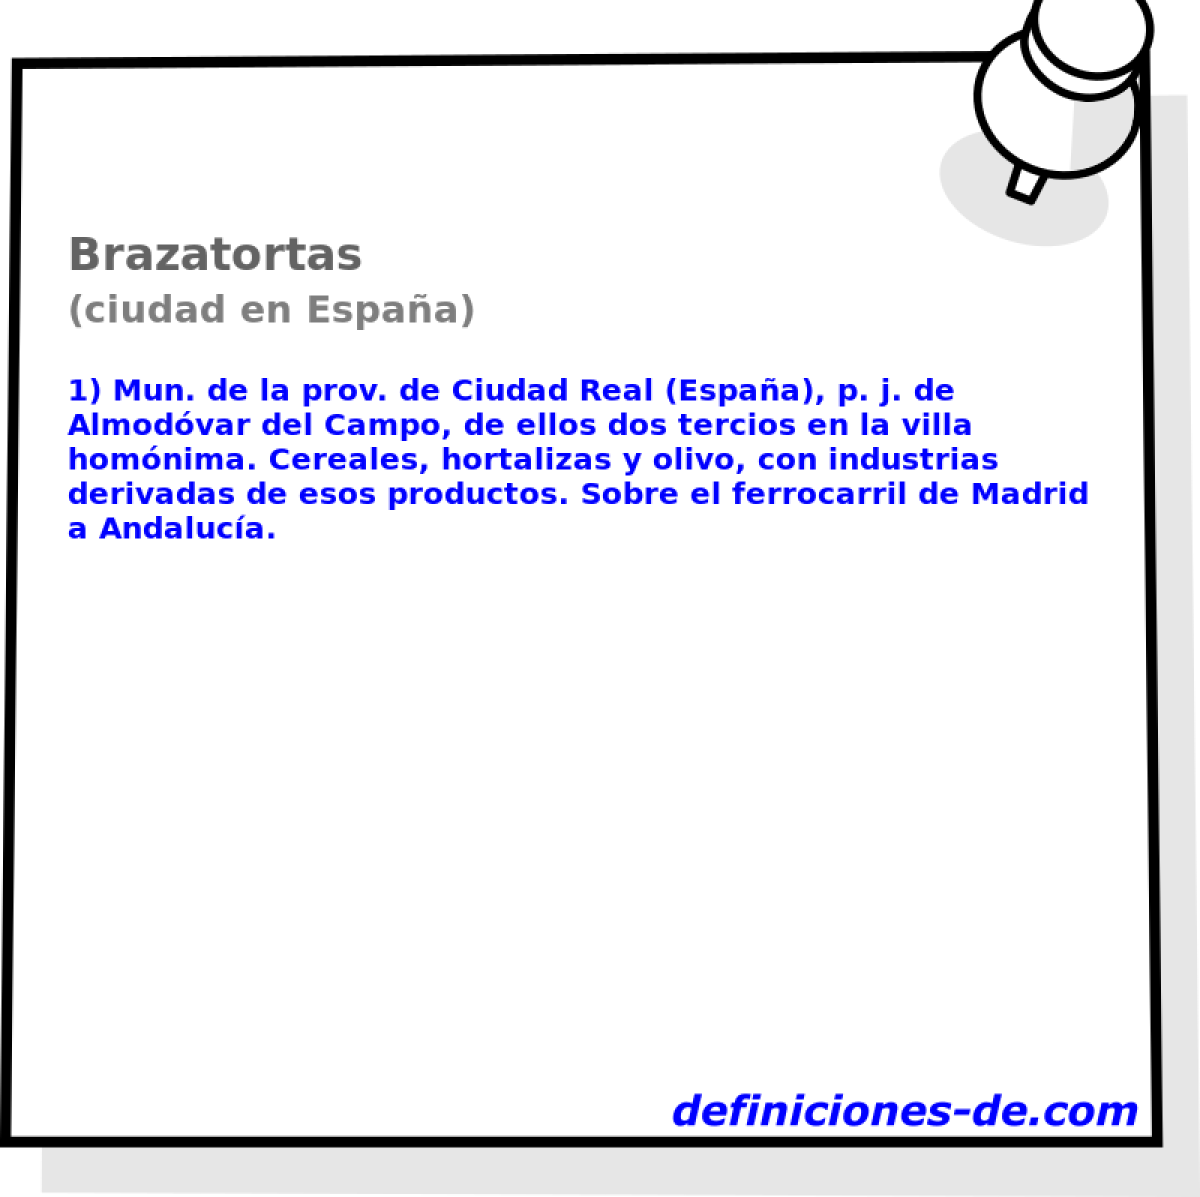 Brazatortas (ciudad en Espaa)